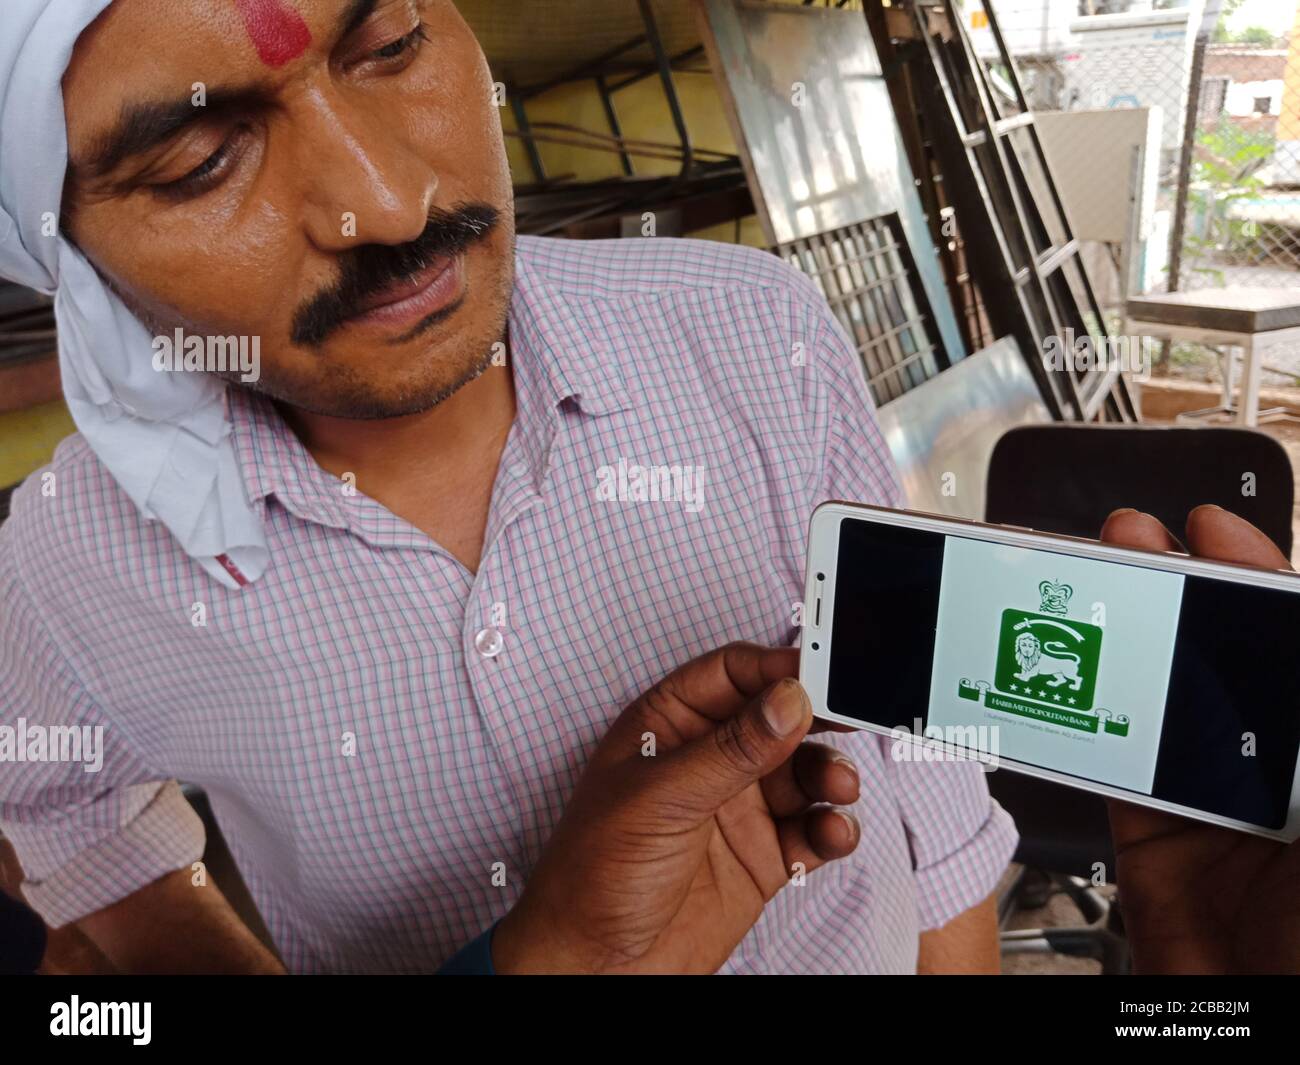 DISTRETTO KATNI, INDIA - 02 GIUGNO 2020: Un uomo indiano che detiene smartphone con visualizzazione del logo della banca metropolitana habib sullo schermo, russo educa banking Foto Stock